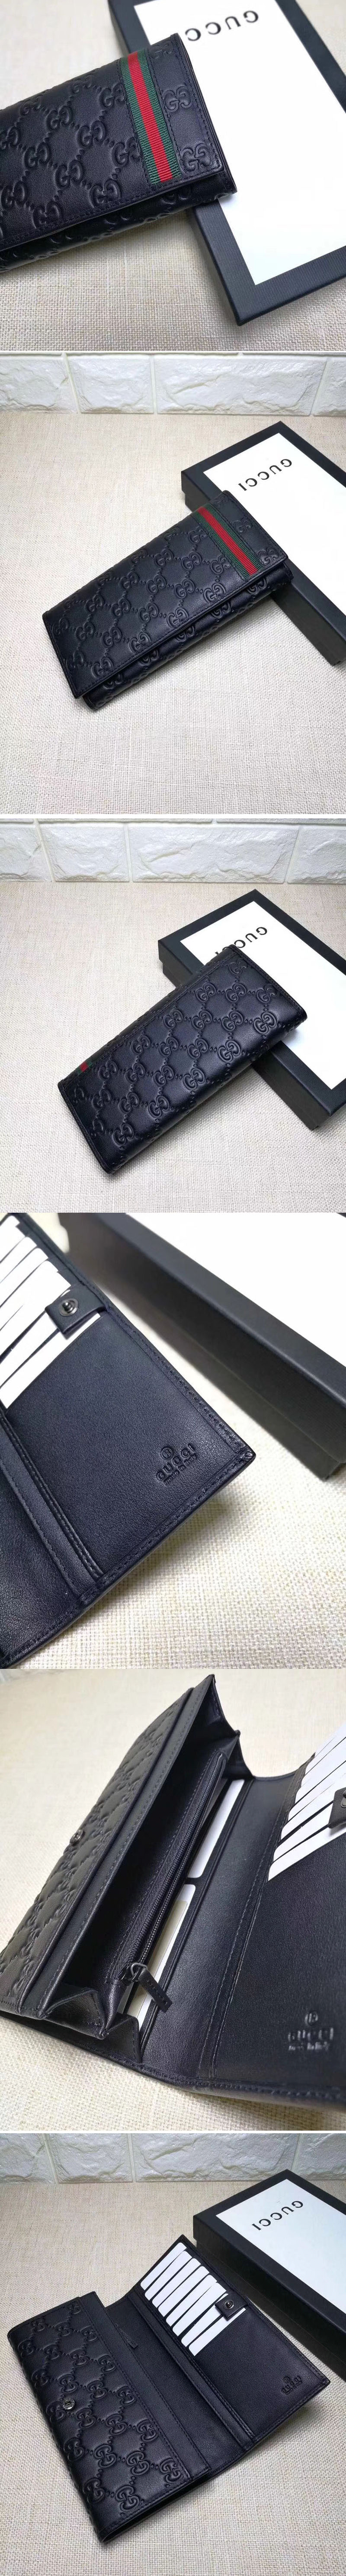 Replica Gucci 212186 Guccissima Leather Bi-Fold Wallet Black